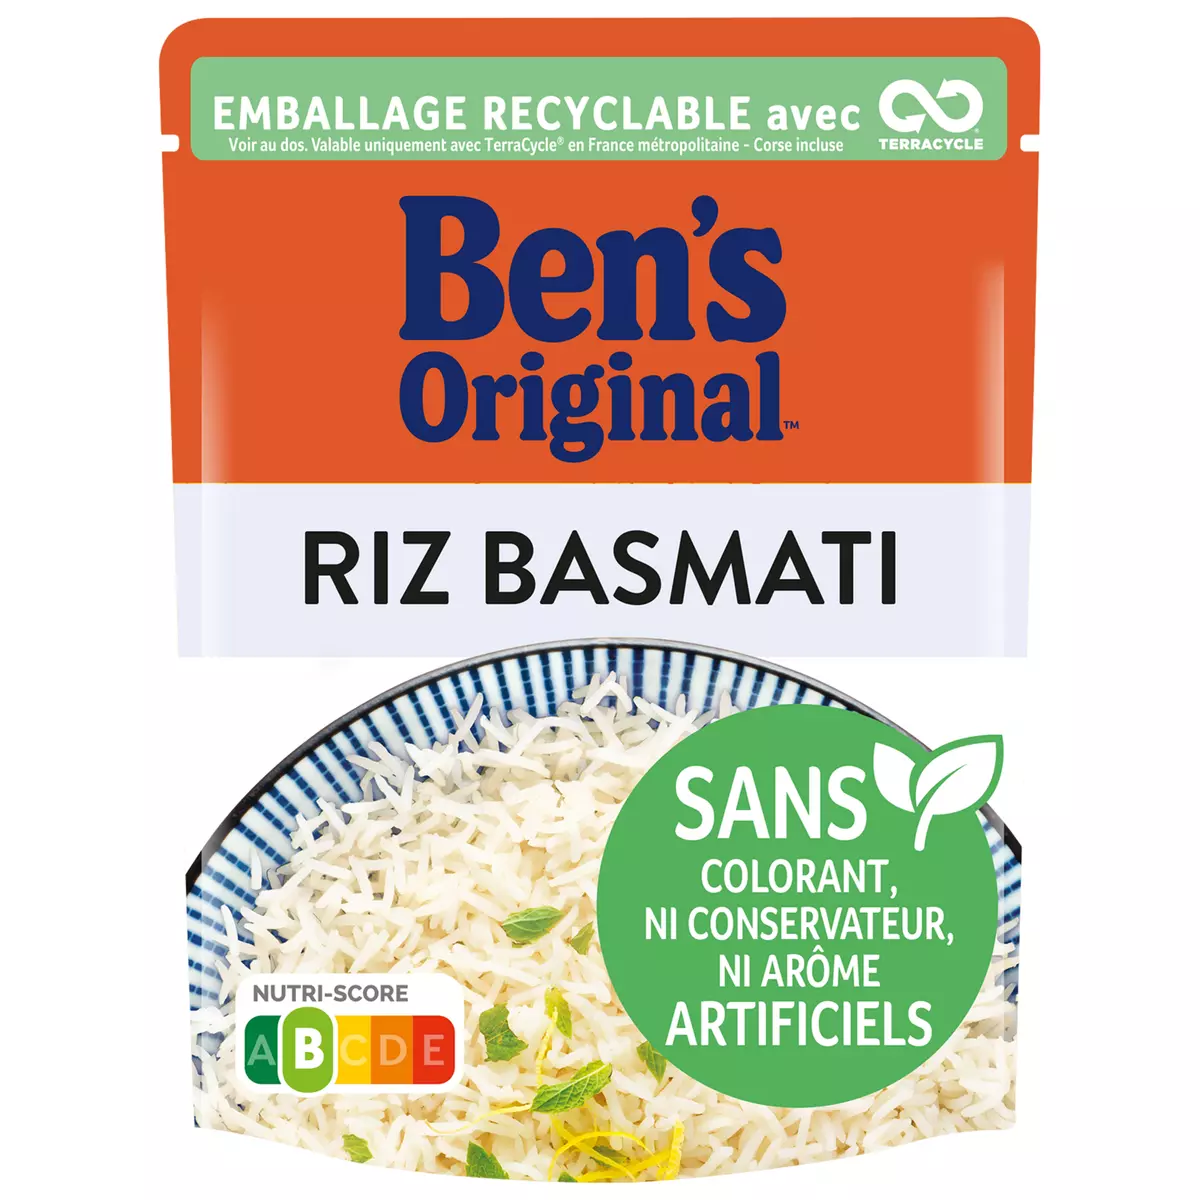 Uncle Ben's en 2 minutes riz complet cuisiné à la méditerranéenne 250g -  Courses à Domicile